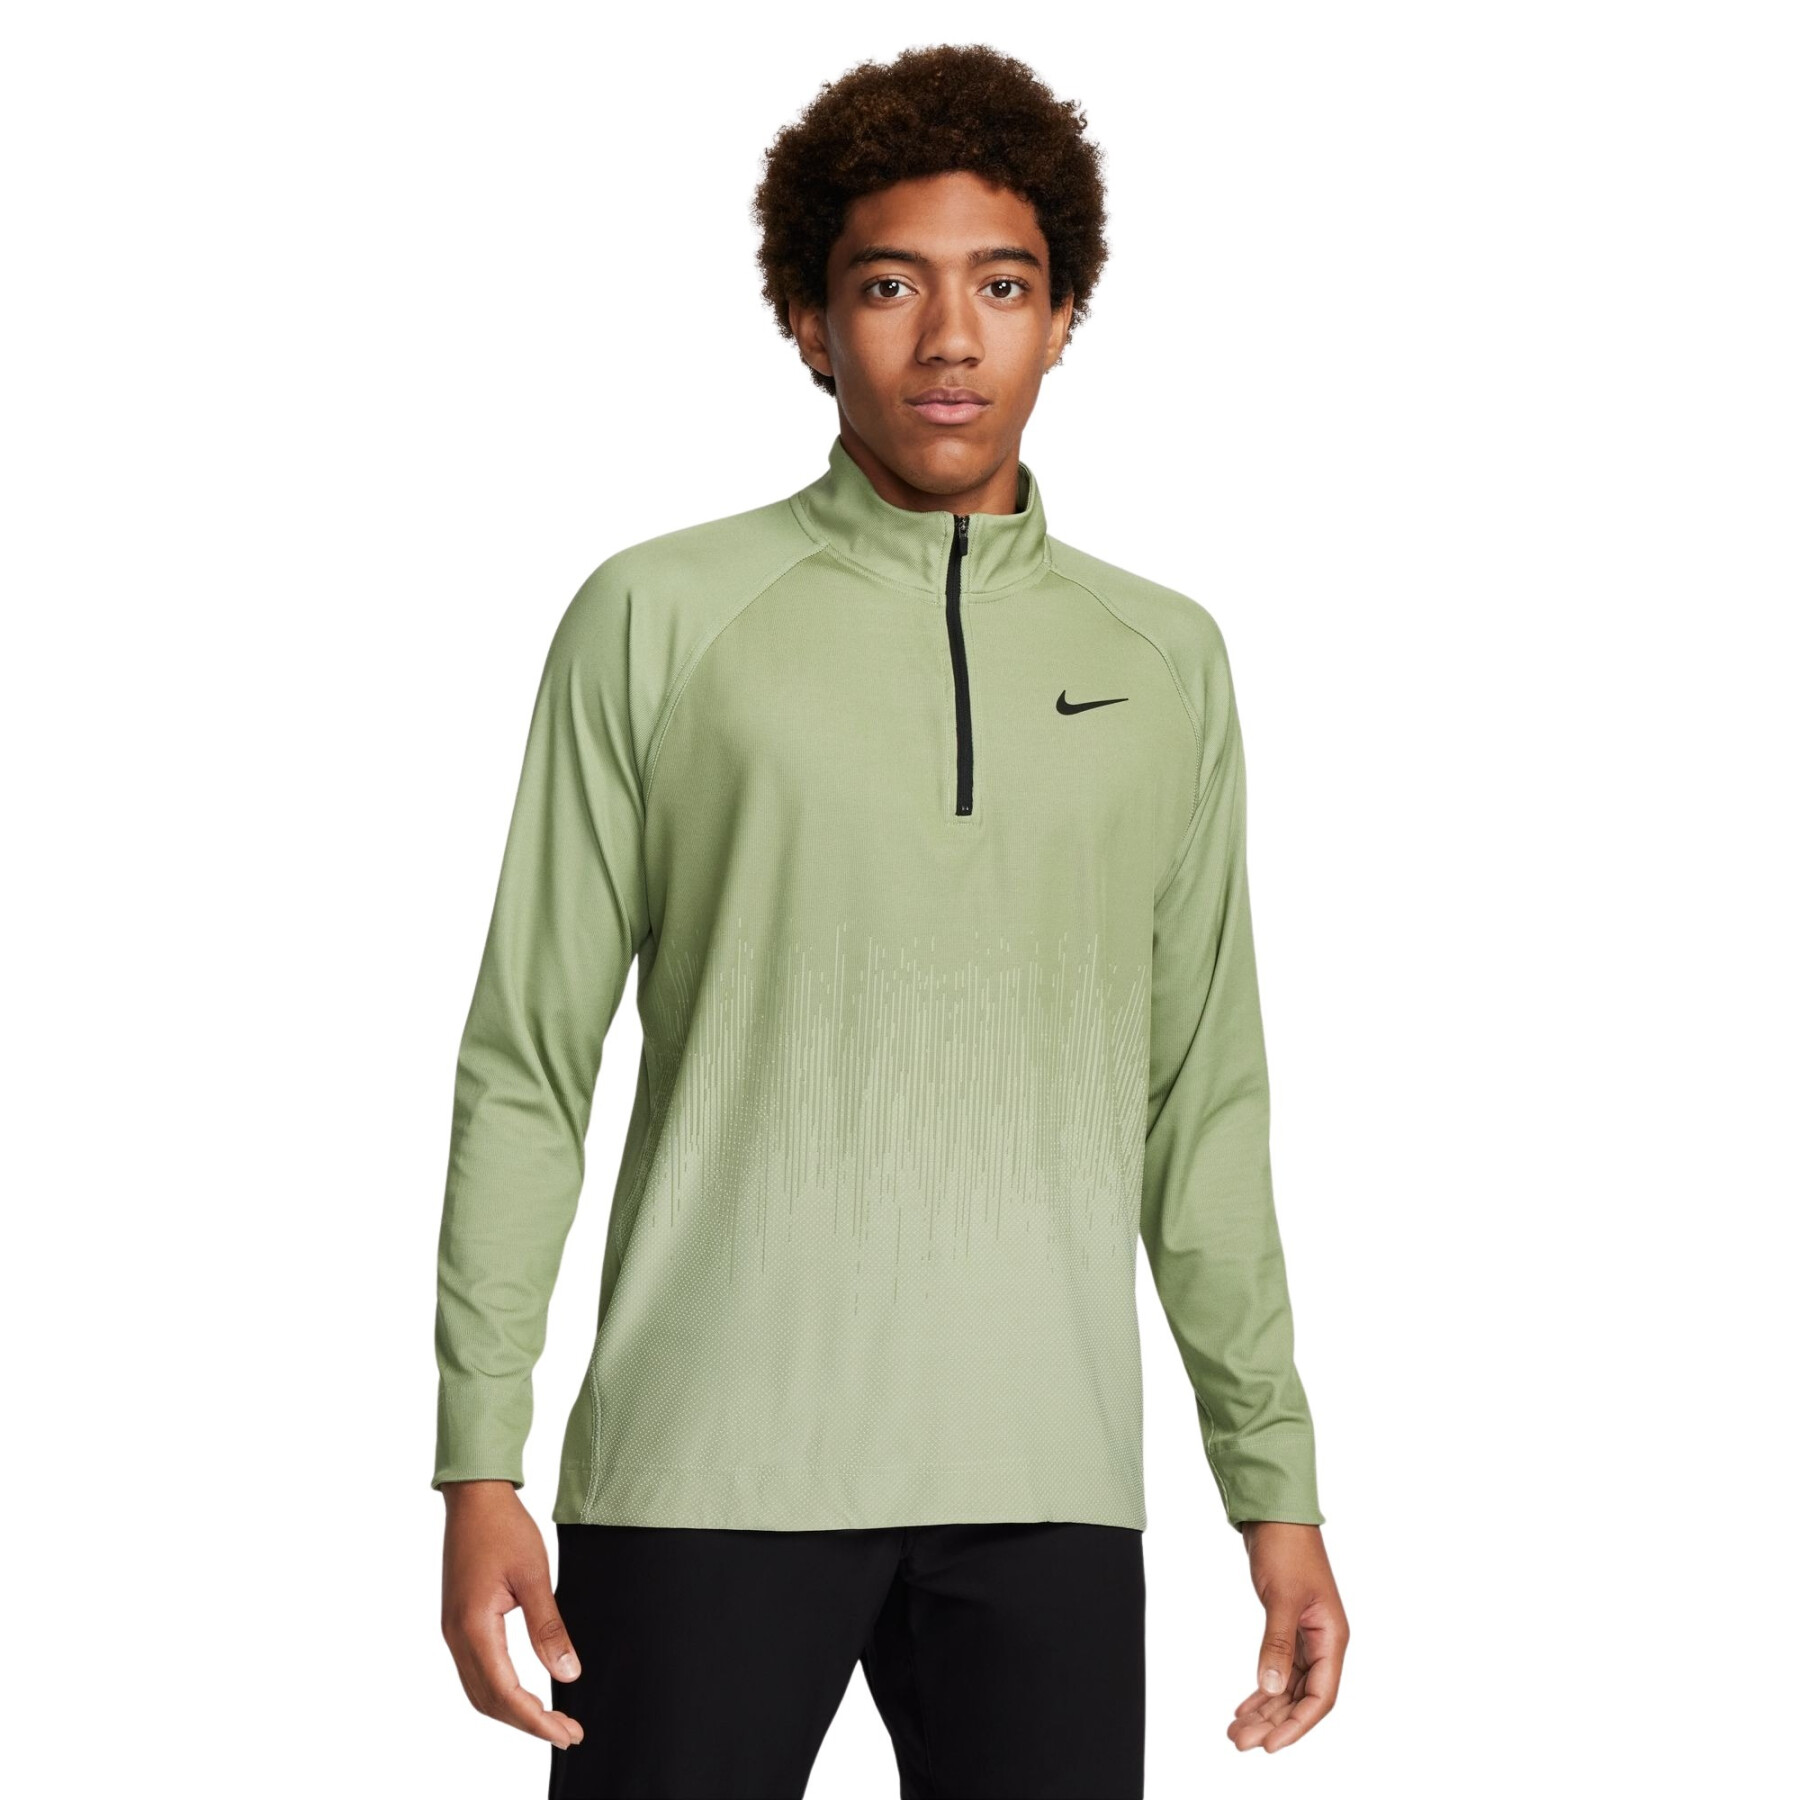 Echt sweatshirt met halve rits Nike Tour